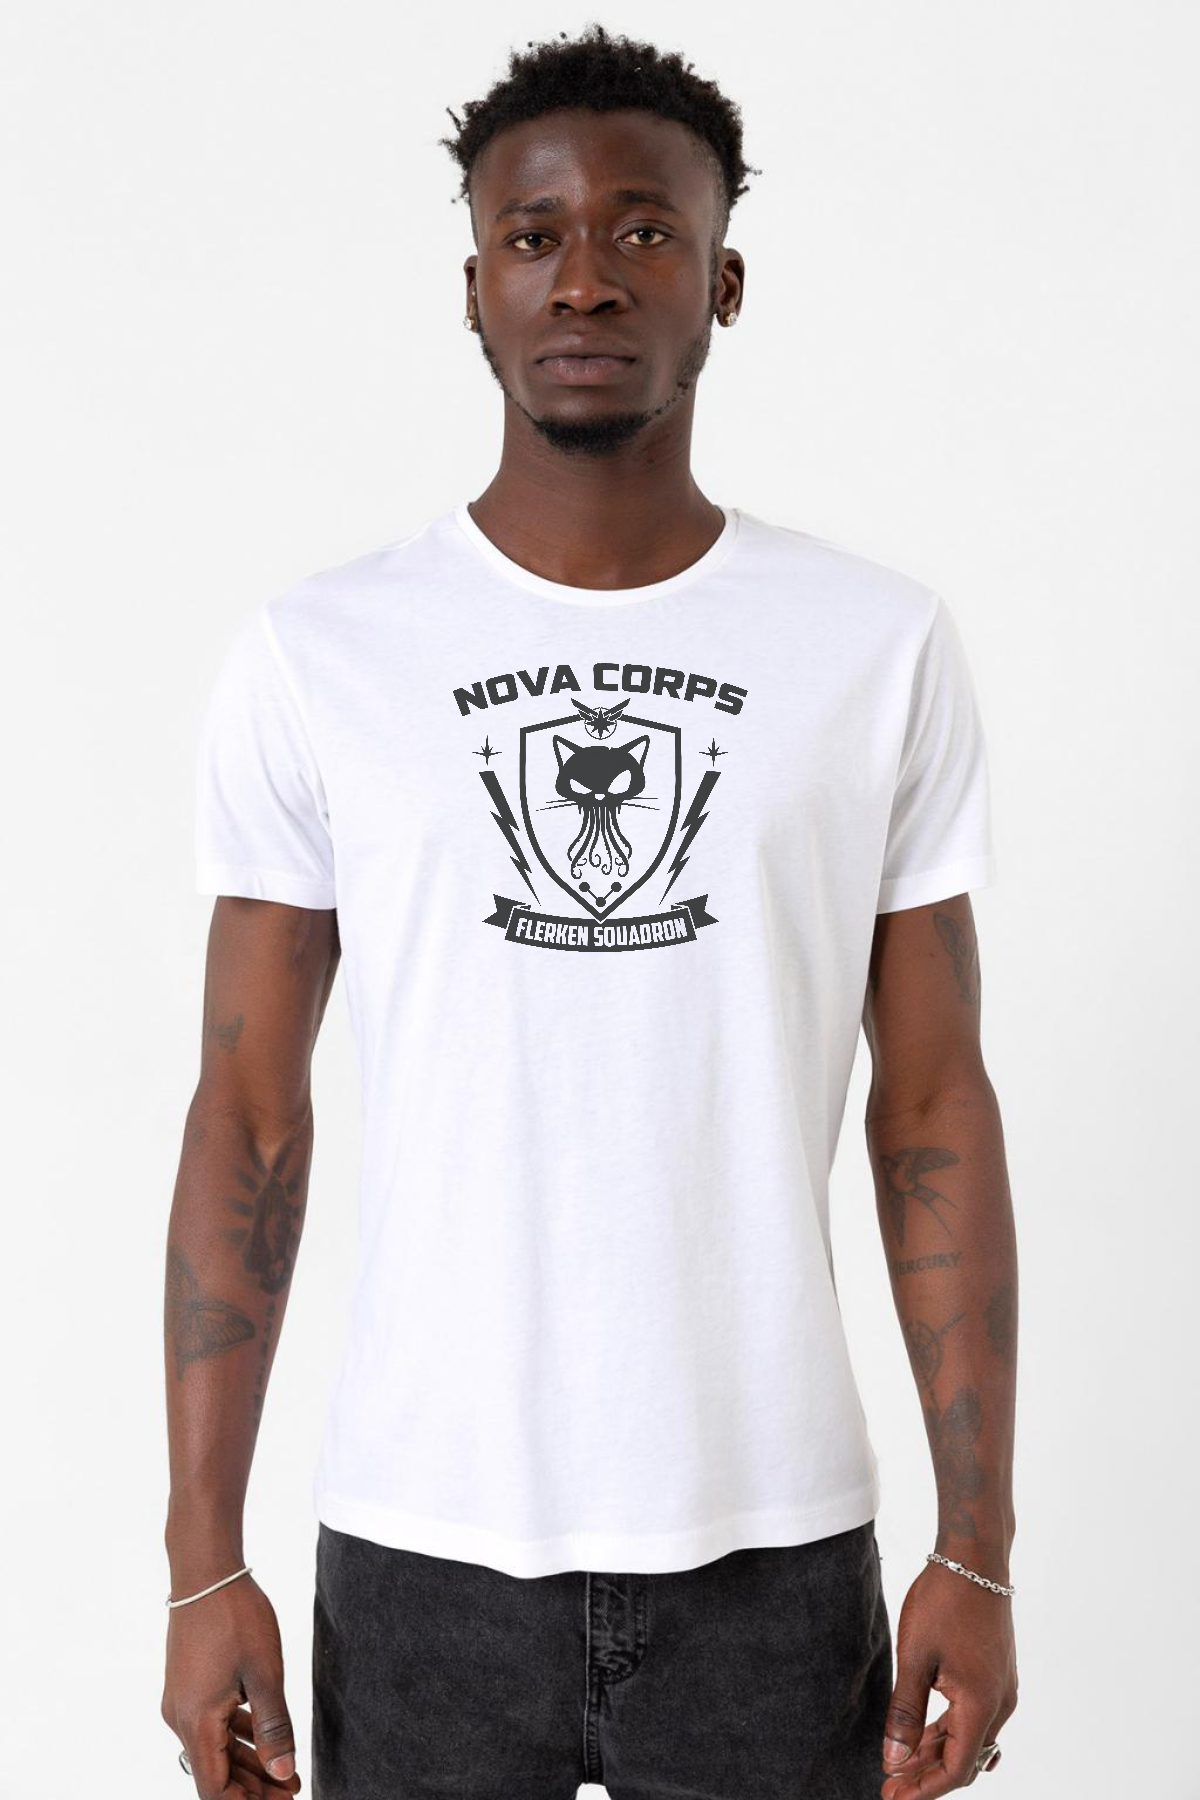 Nova Corps Flerken Squadron Beyaz Erkek Bisikletyaka Tshirt